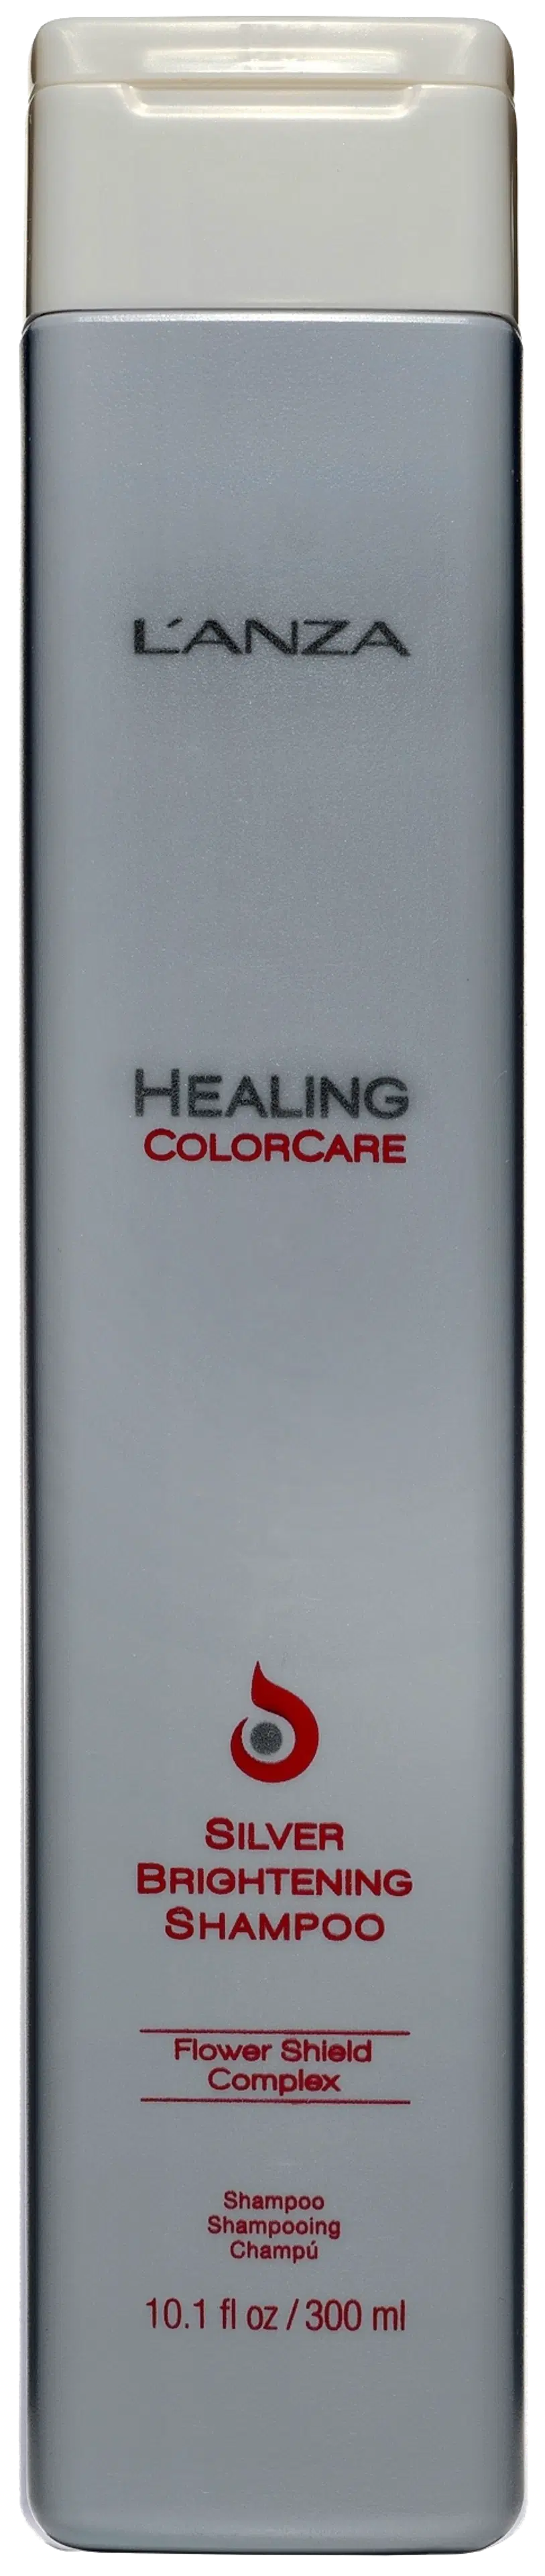 L´ANZA Healing ColorCare Silver Brightening shampoo 300 ml